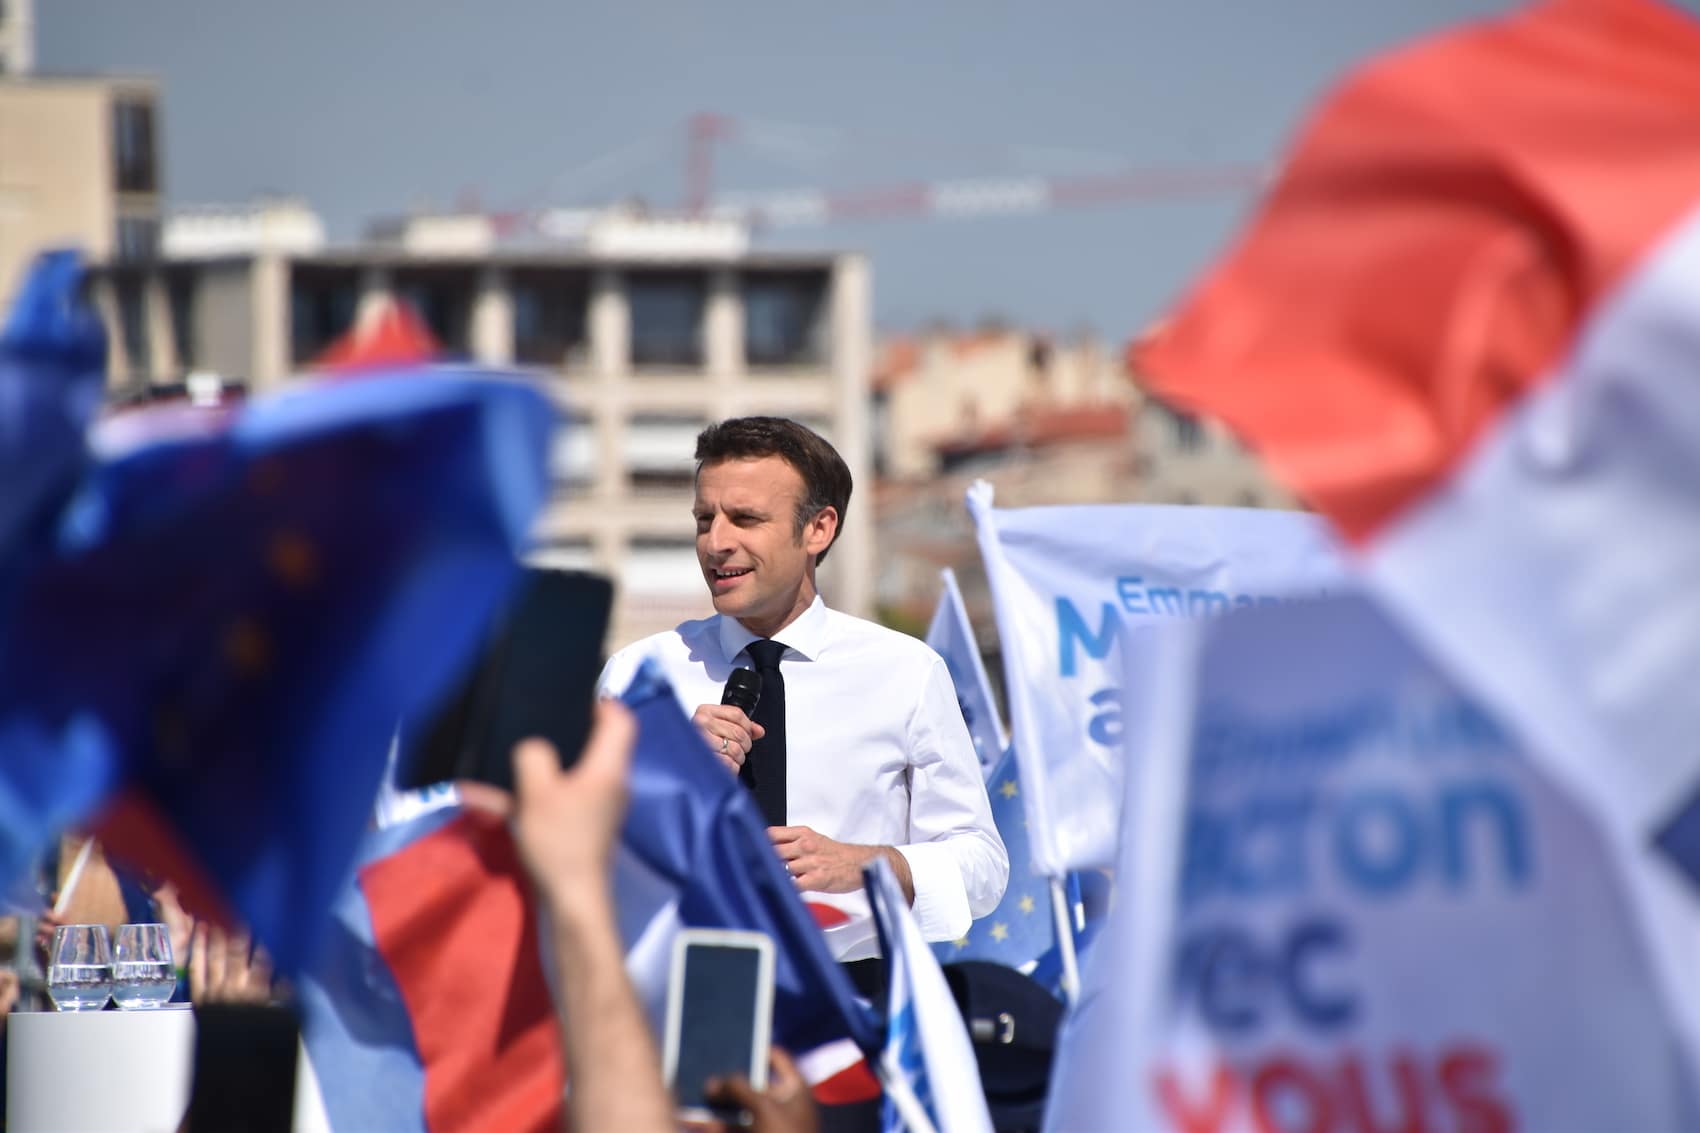 Macron, Pour Emmanuel Macron « Marseille est un laboratoire de la République », Made in Marseille